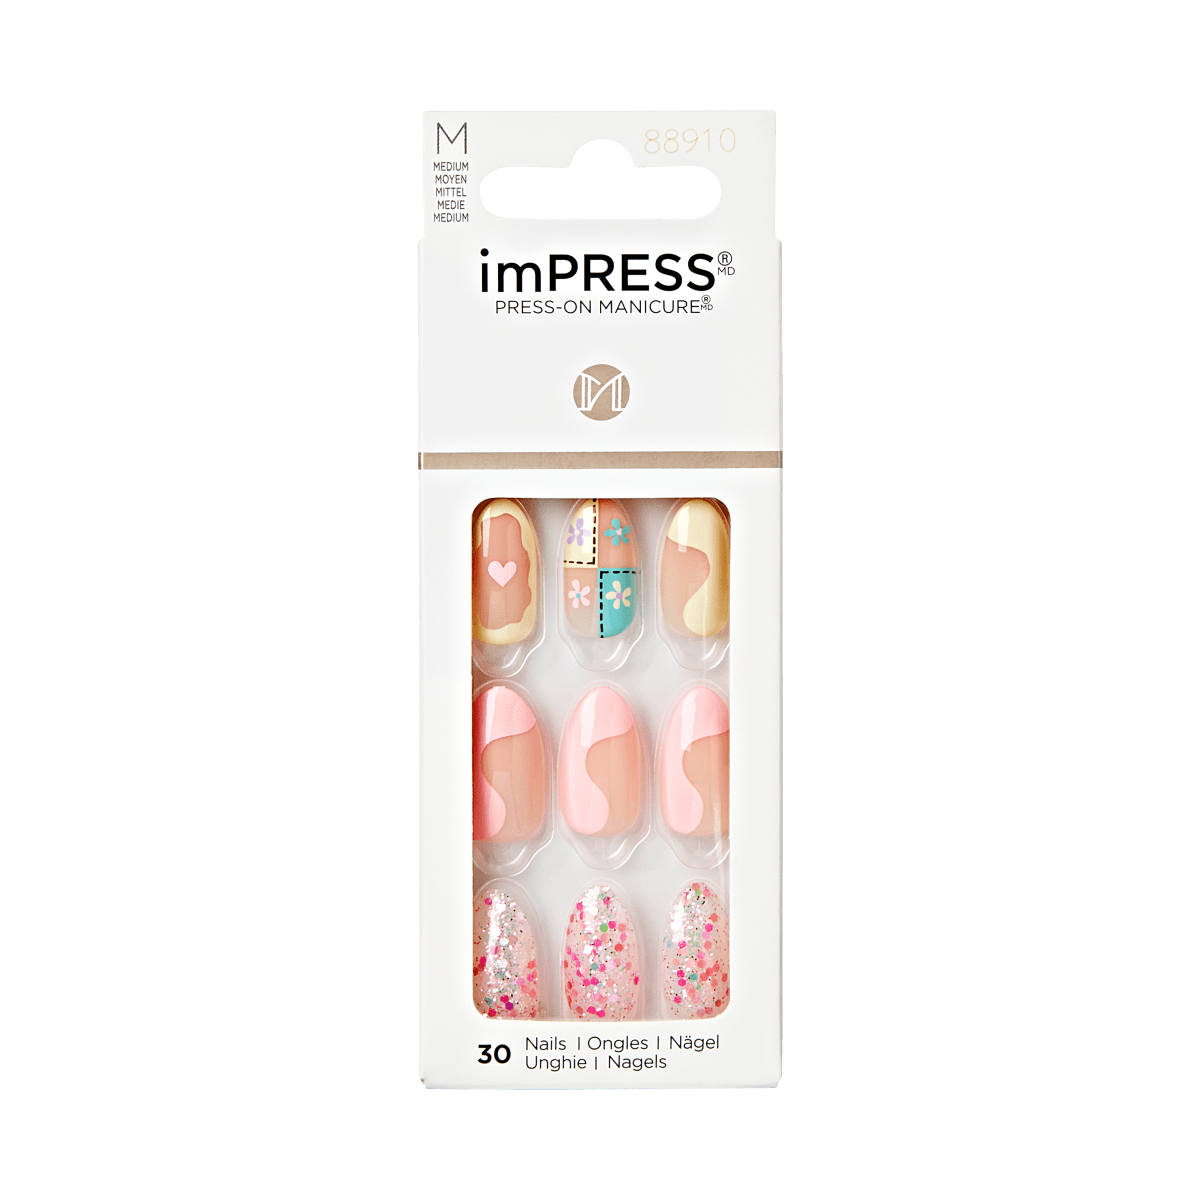 imPRESS Press-On Manicure - Spark of Joy